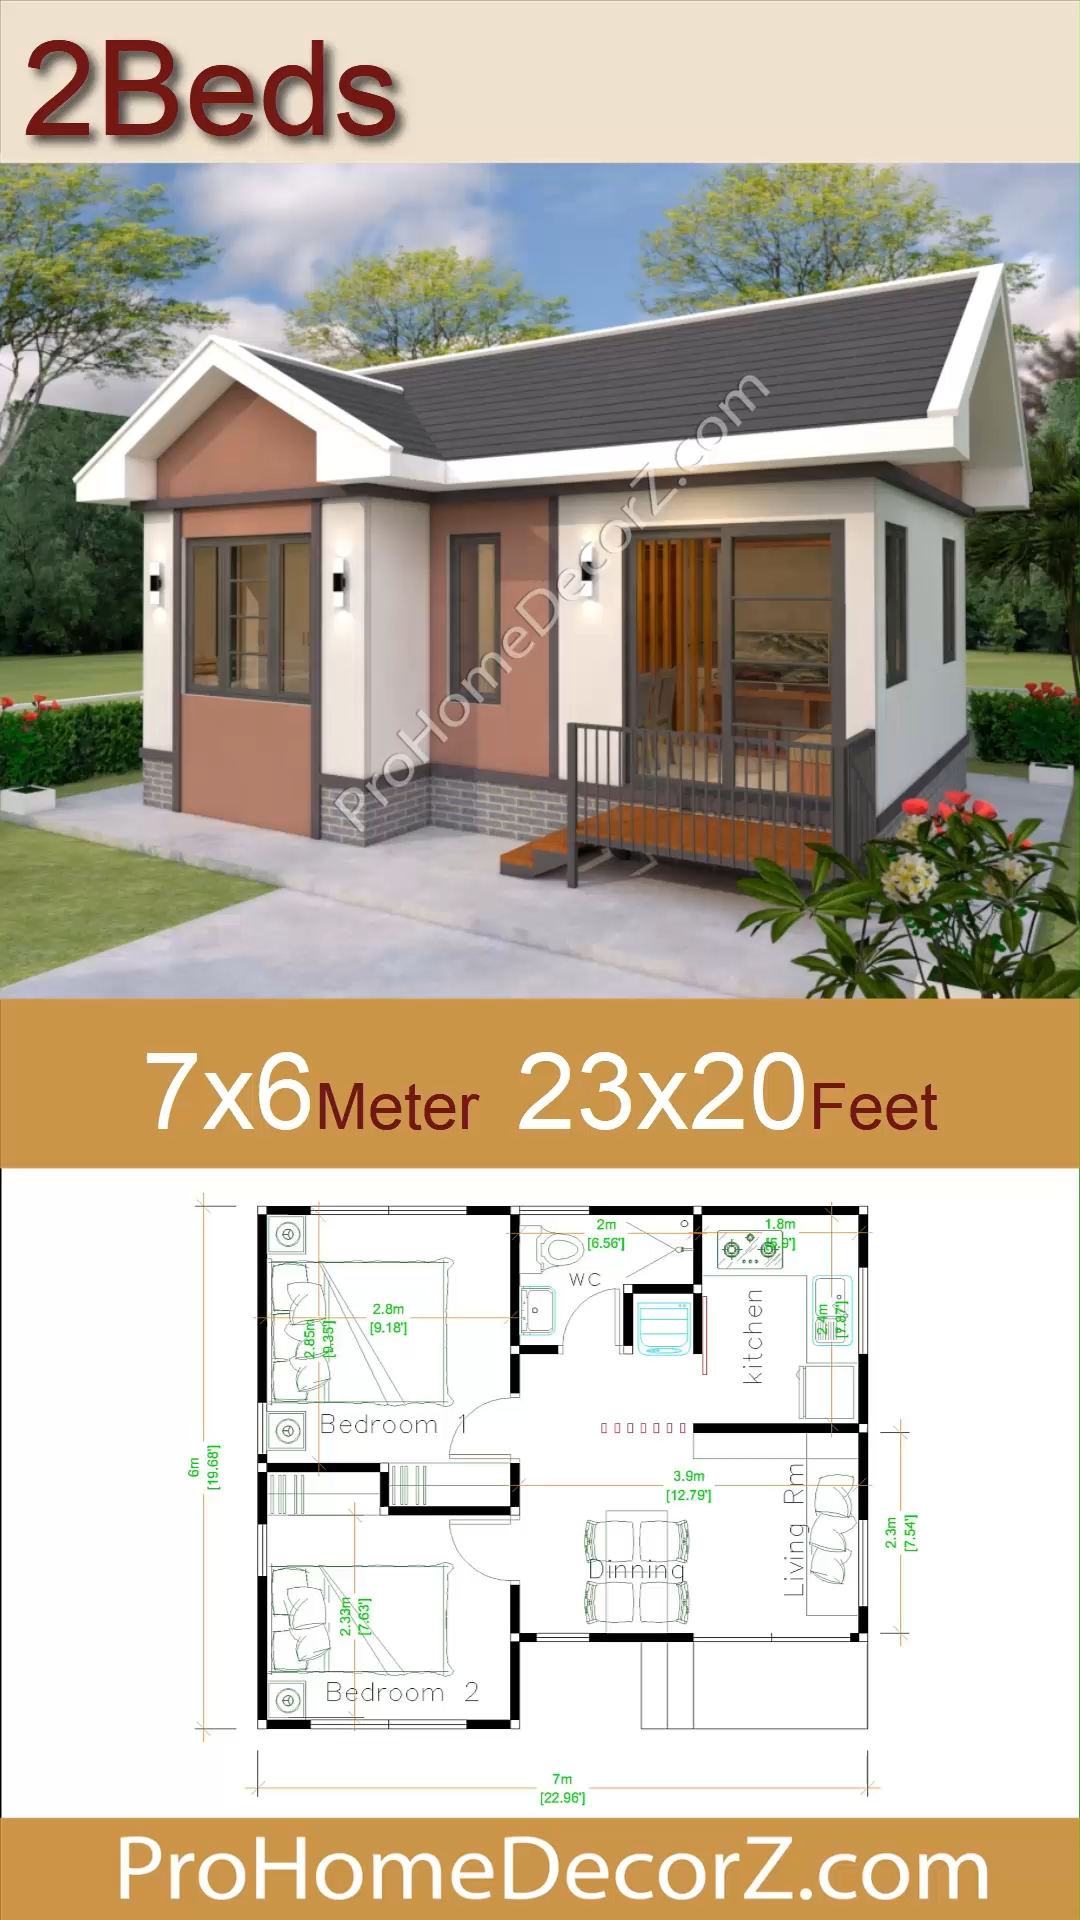 Luxury Tiny House 7x6 Meter 23x20 Feet 2 Beds - Luxury Tiny House 7x6 Meter 23x20 Feet 2 Beds -   15 diy House plans ideas